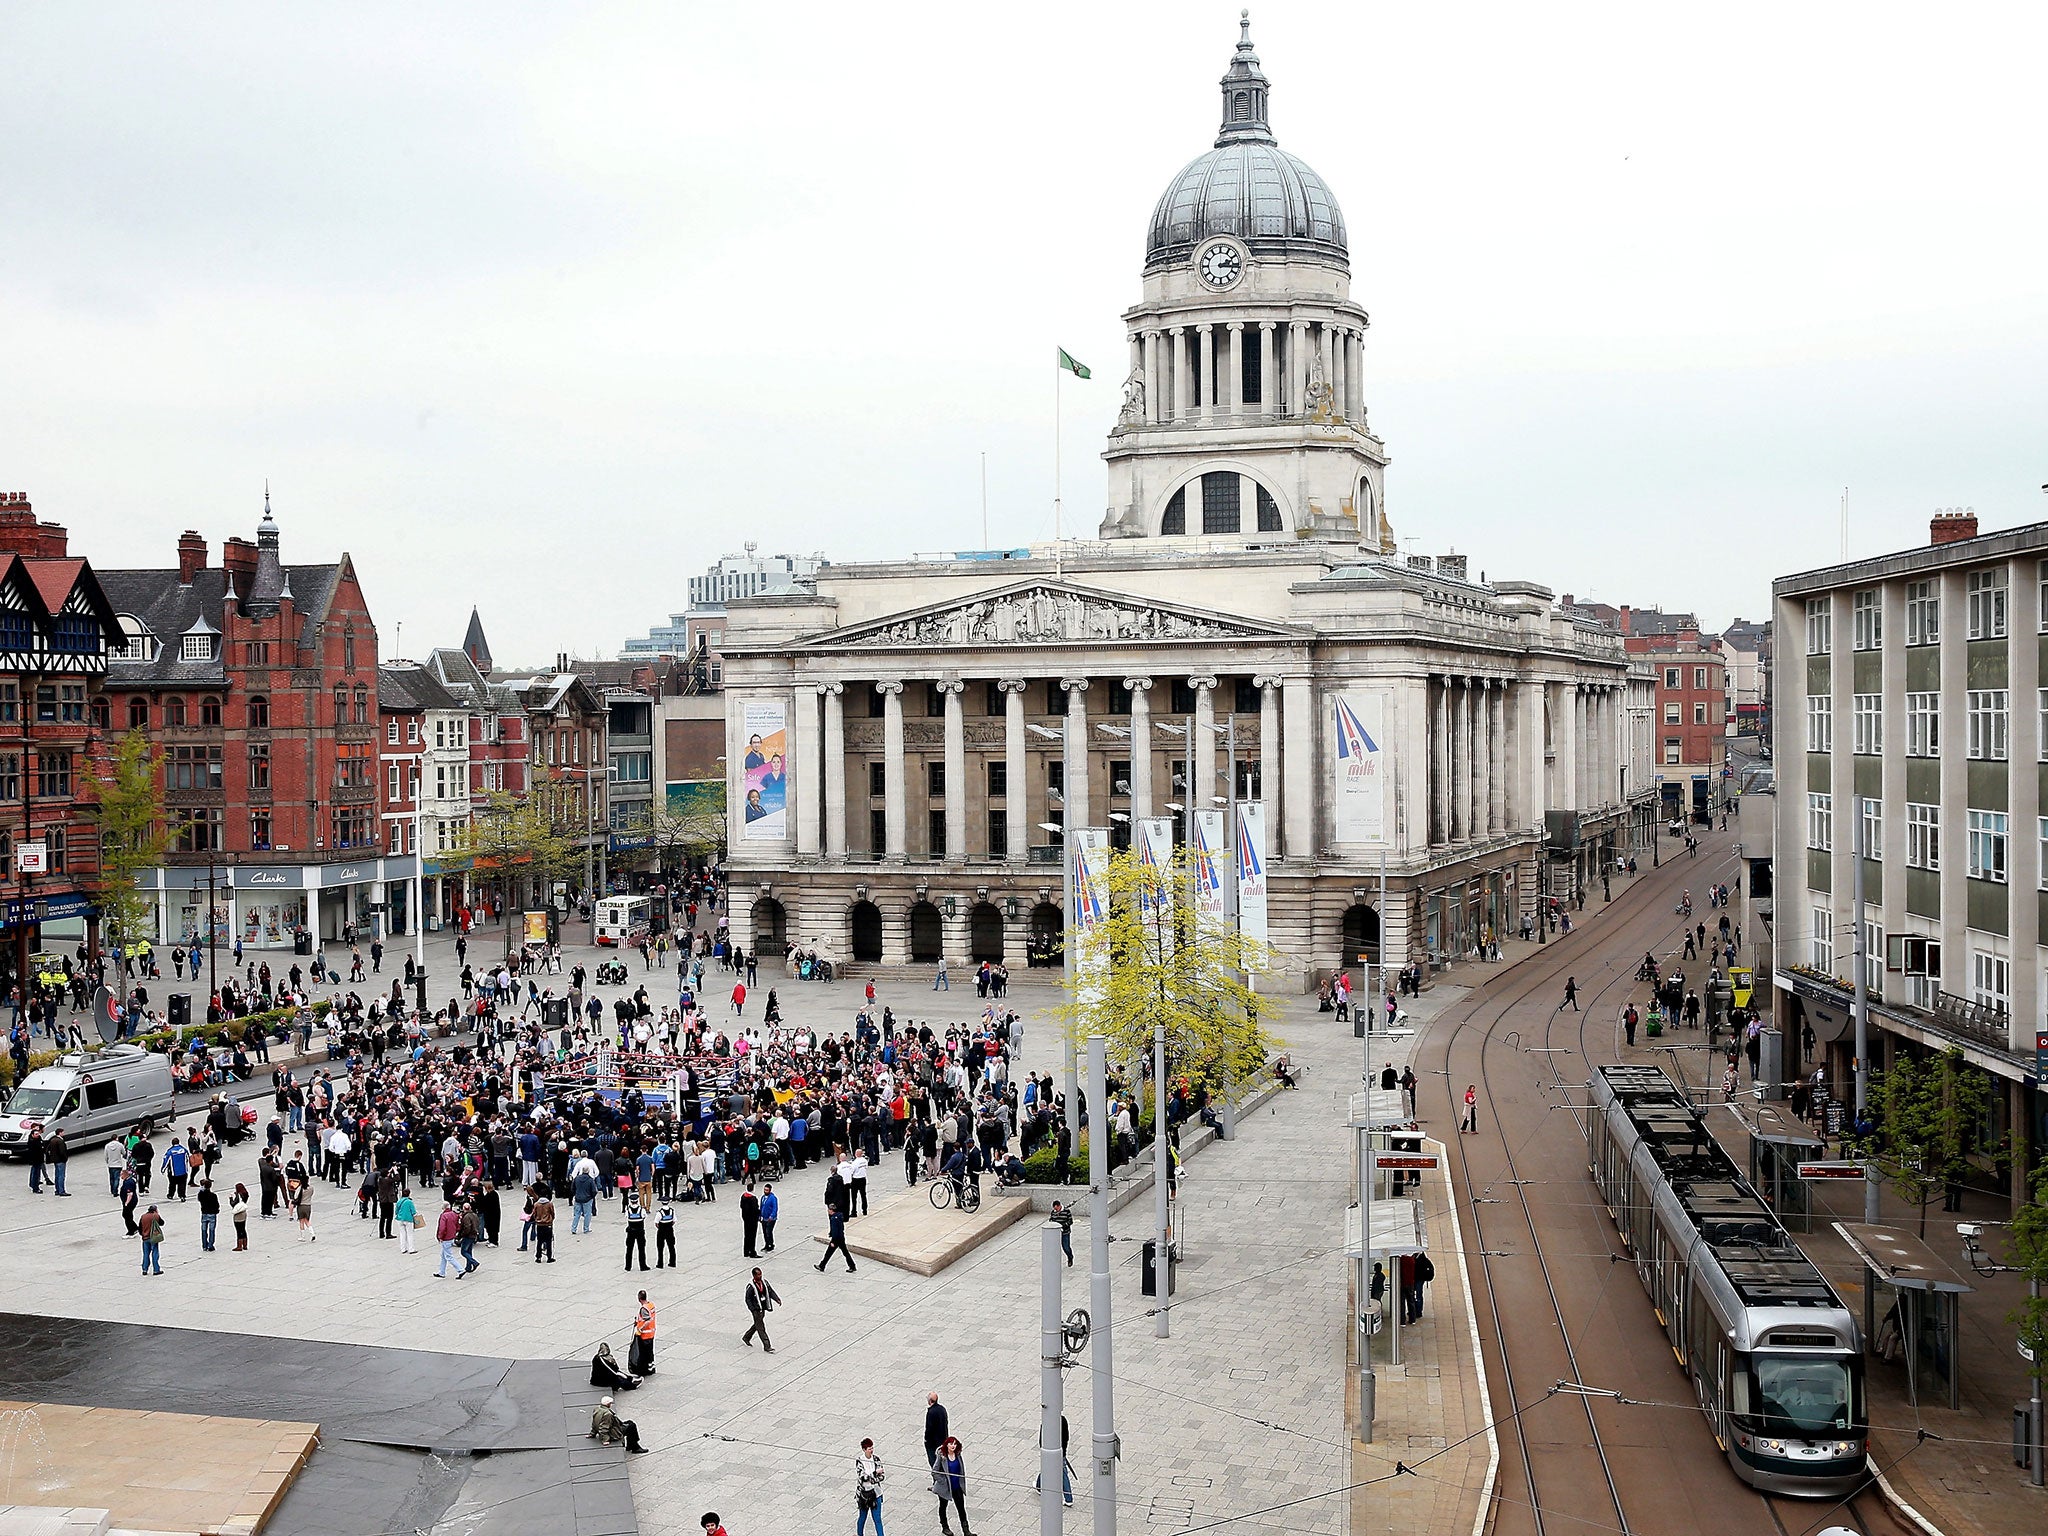 Market Square, Nottingham, where Peter Barker streaked through a 'Women against Violence' demonstration